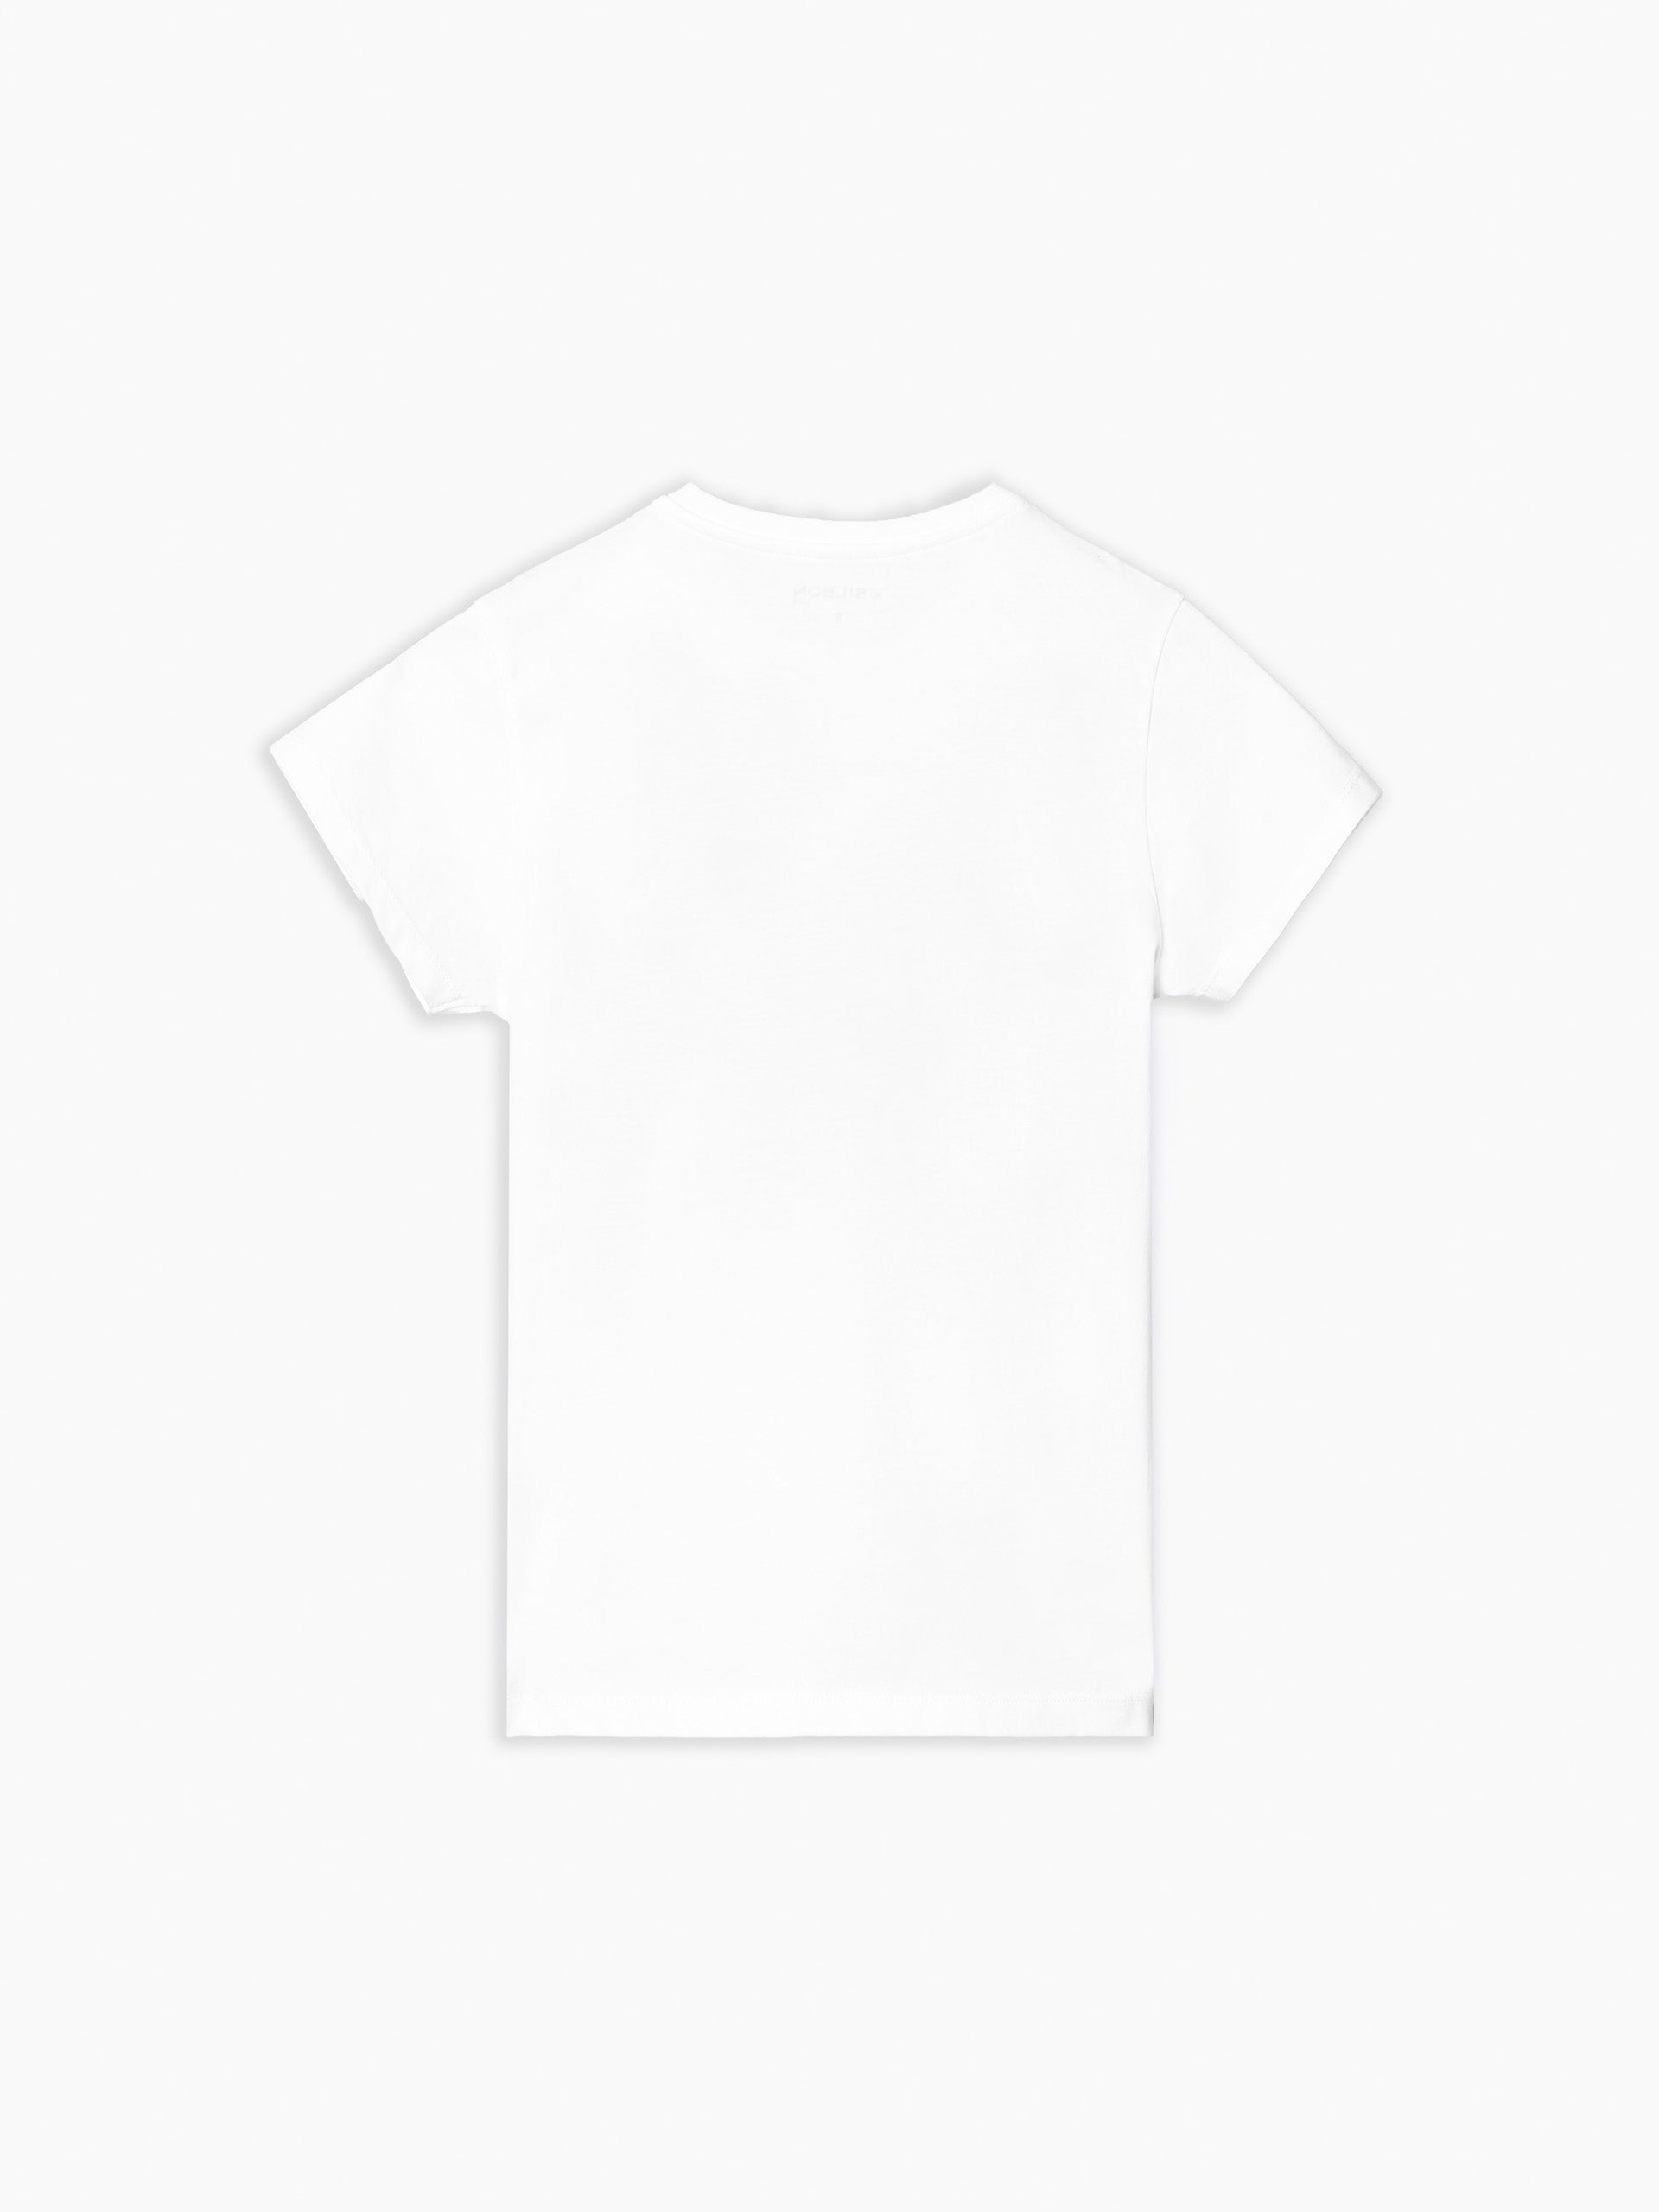 Camiseta kids maxiraqueta blanca